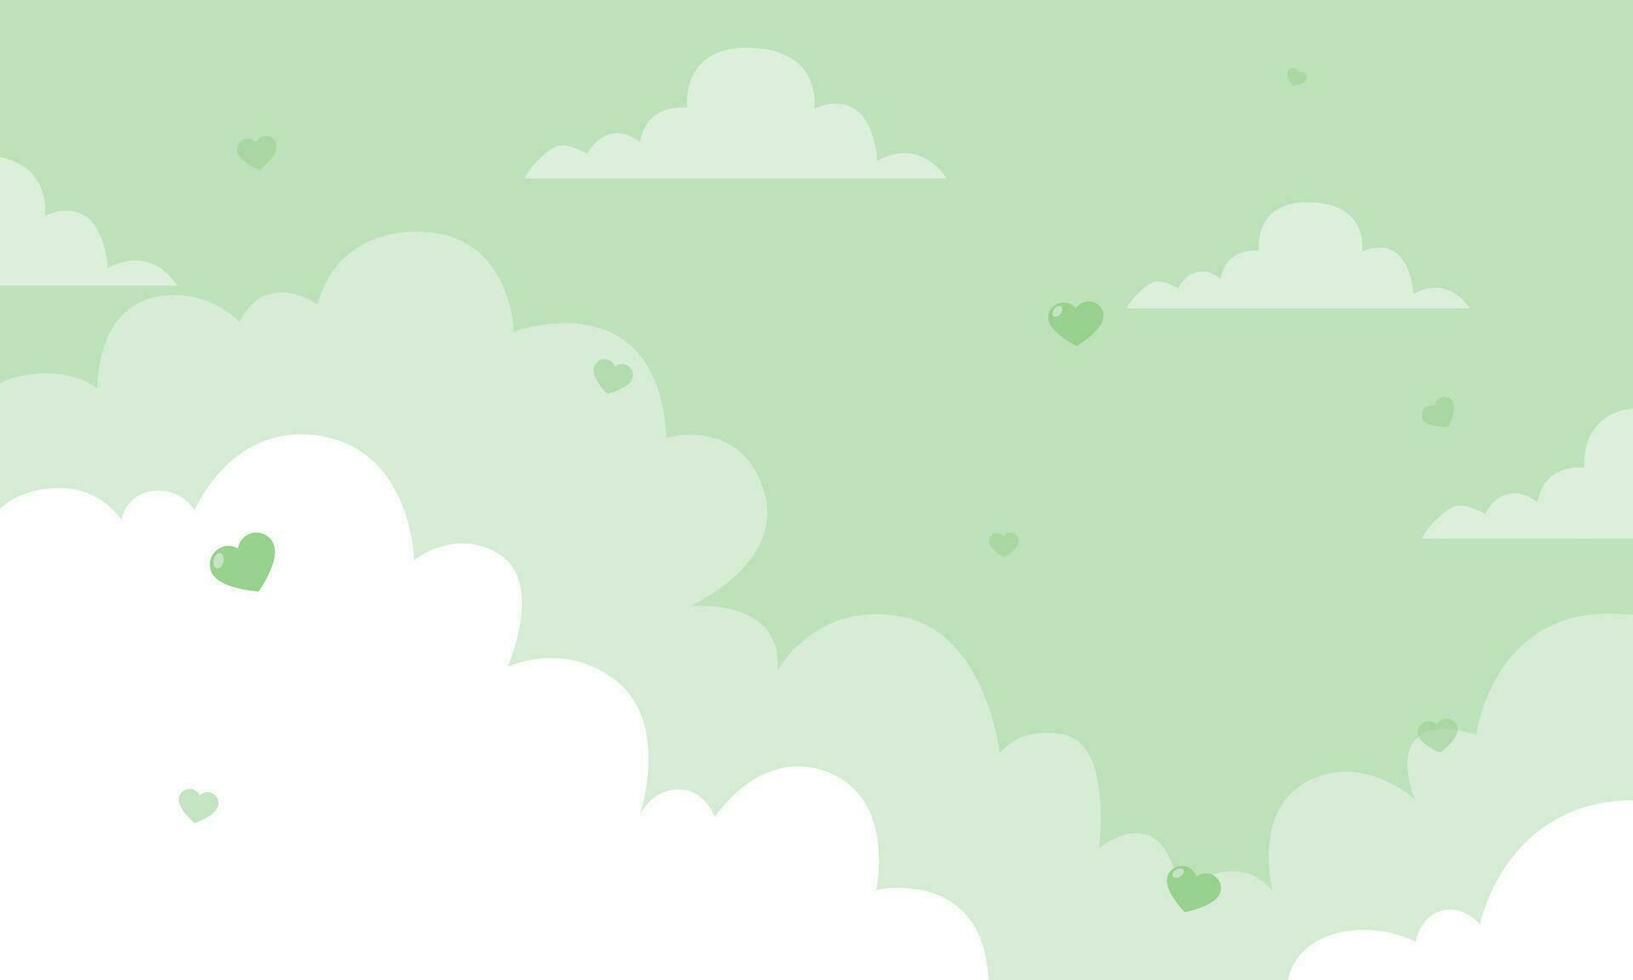 vektor valentine tema med hjärtan i grön himmel bakgrund